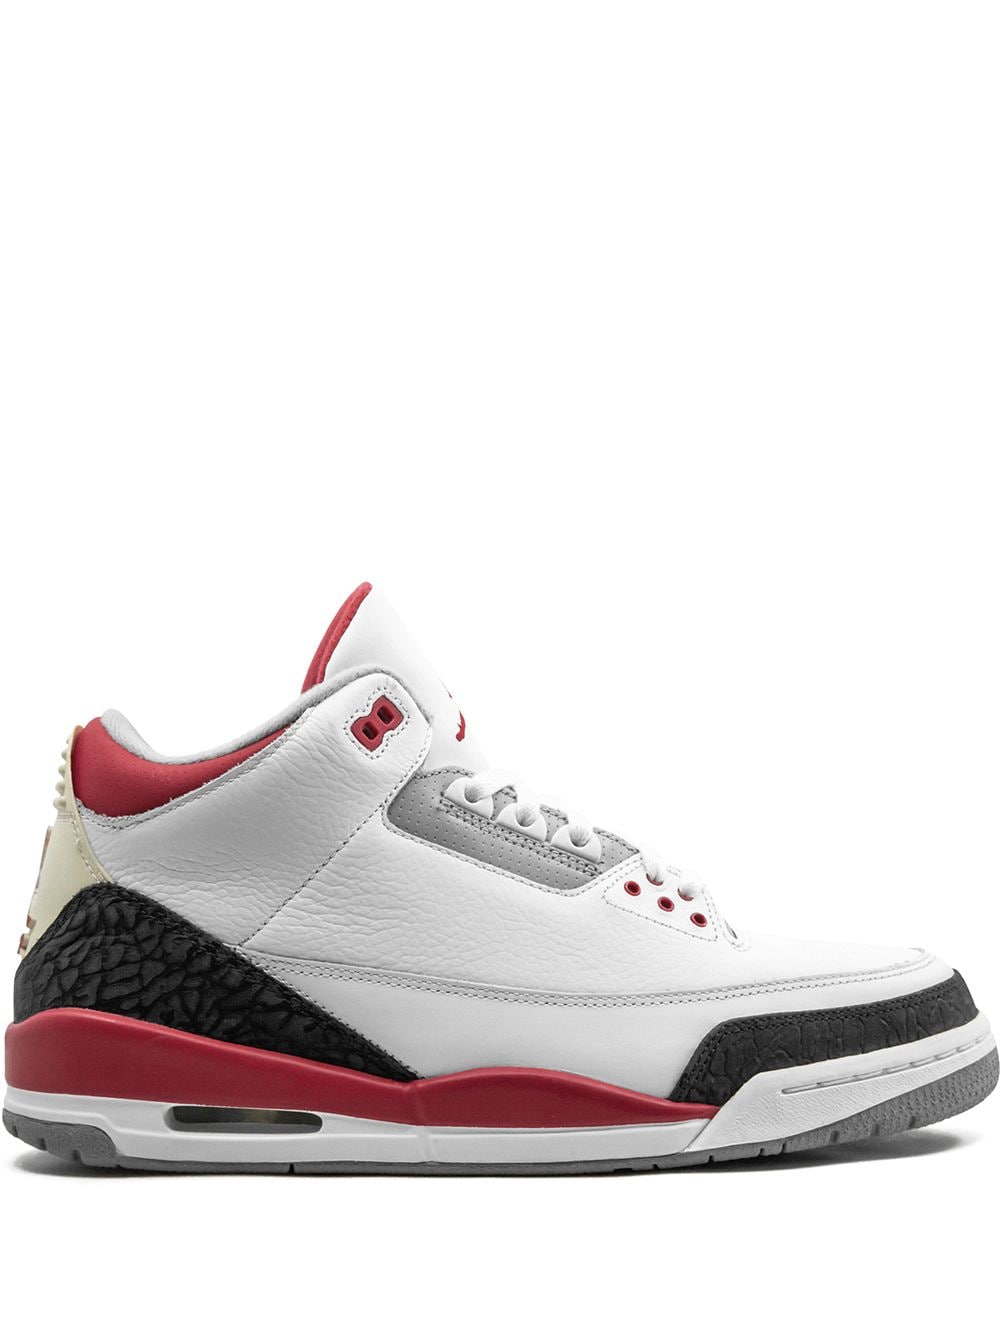 Jordan Air Jordan 3 Retro Fire Red sneakers - White von Jordan